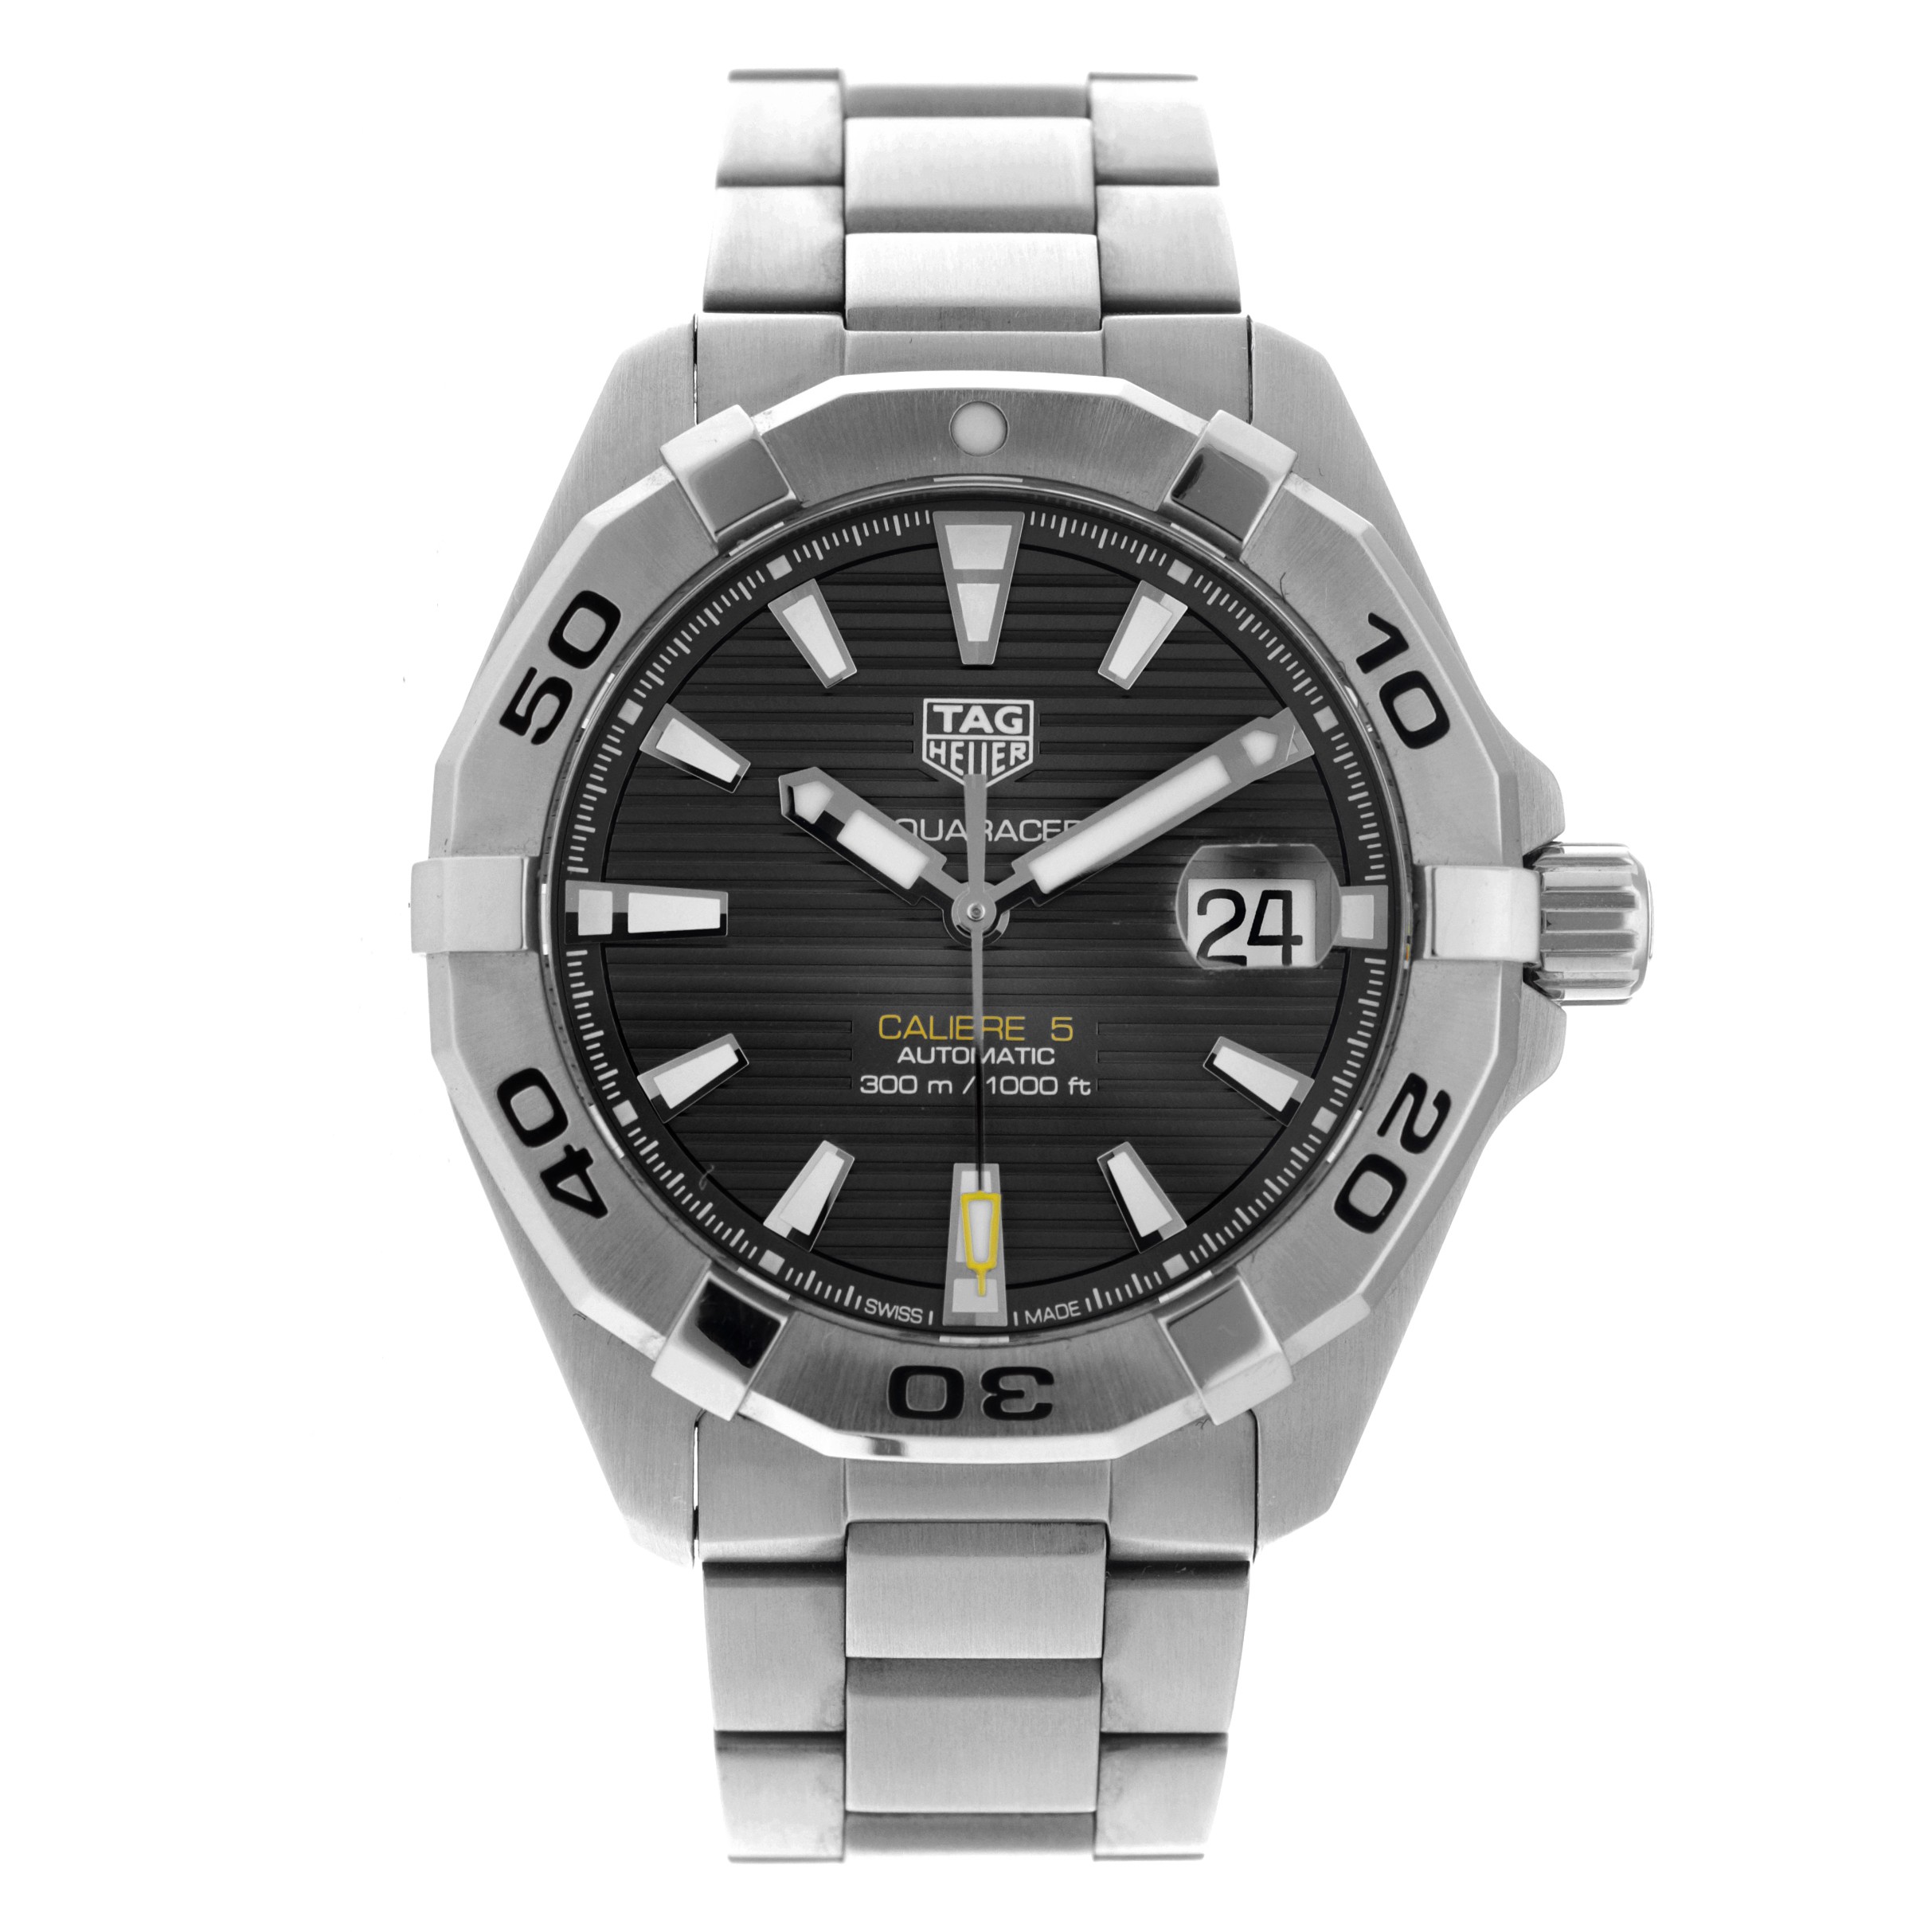 No Reserve - TAG Heuer Aquaracer WBD2113/0 - Men's watch.